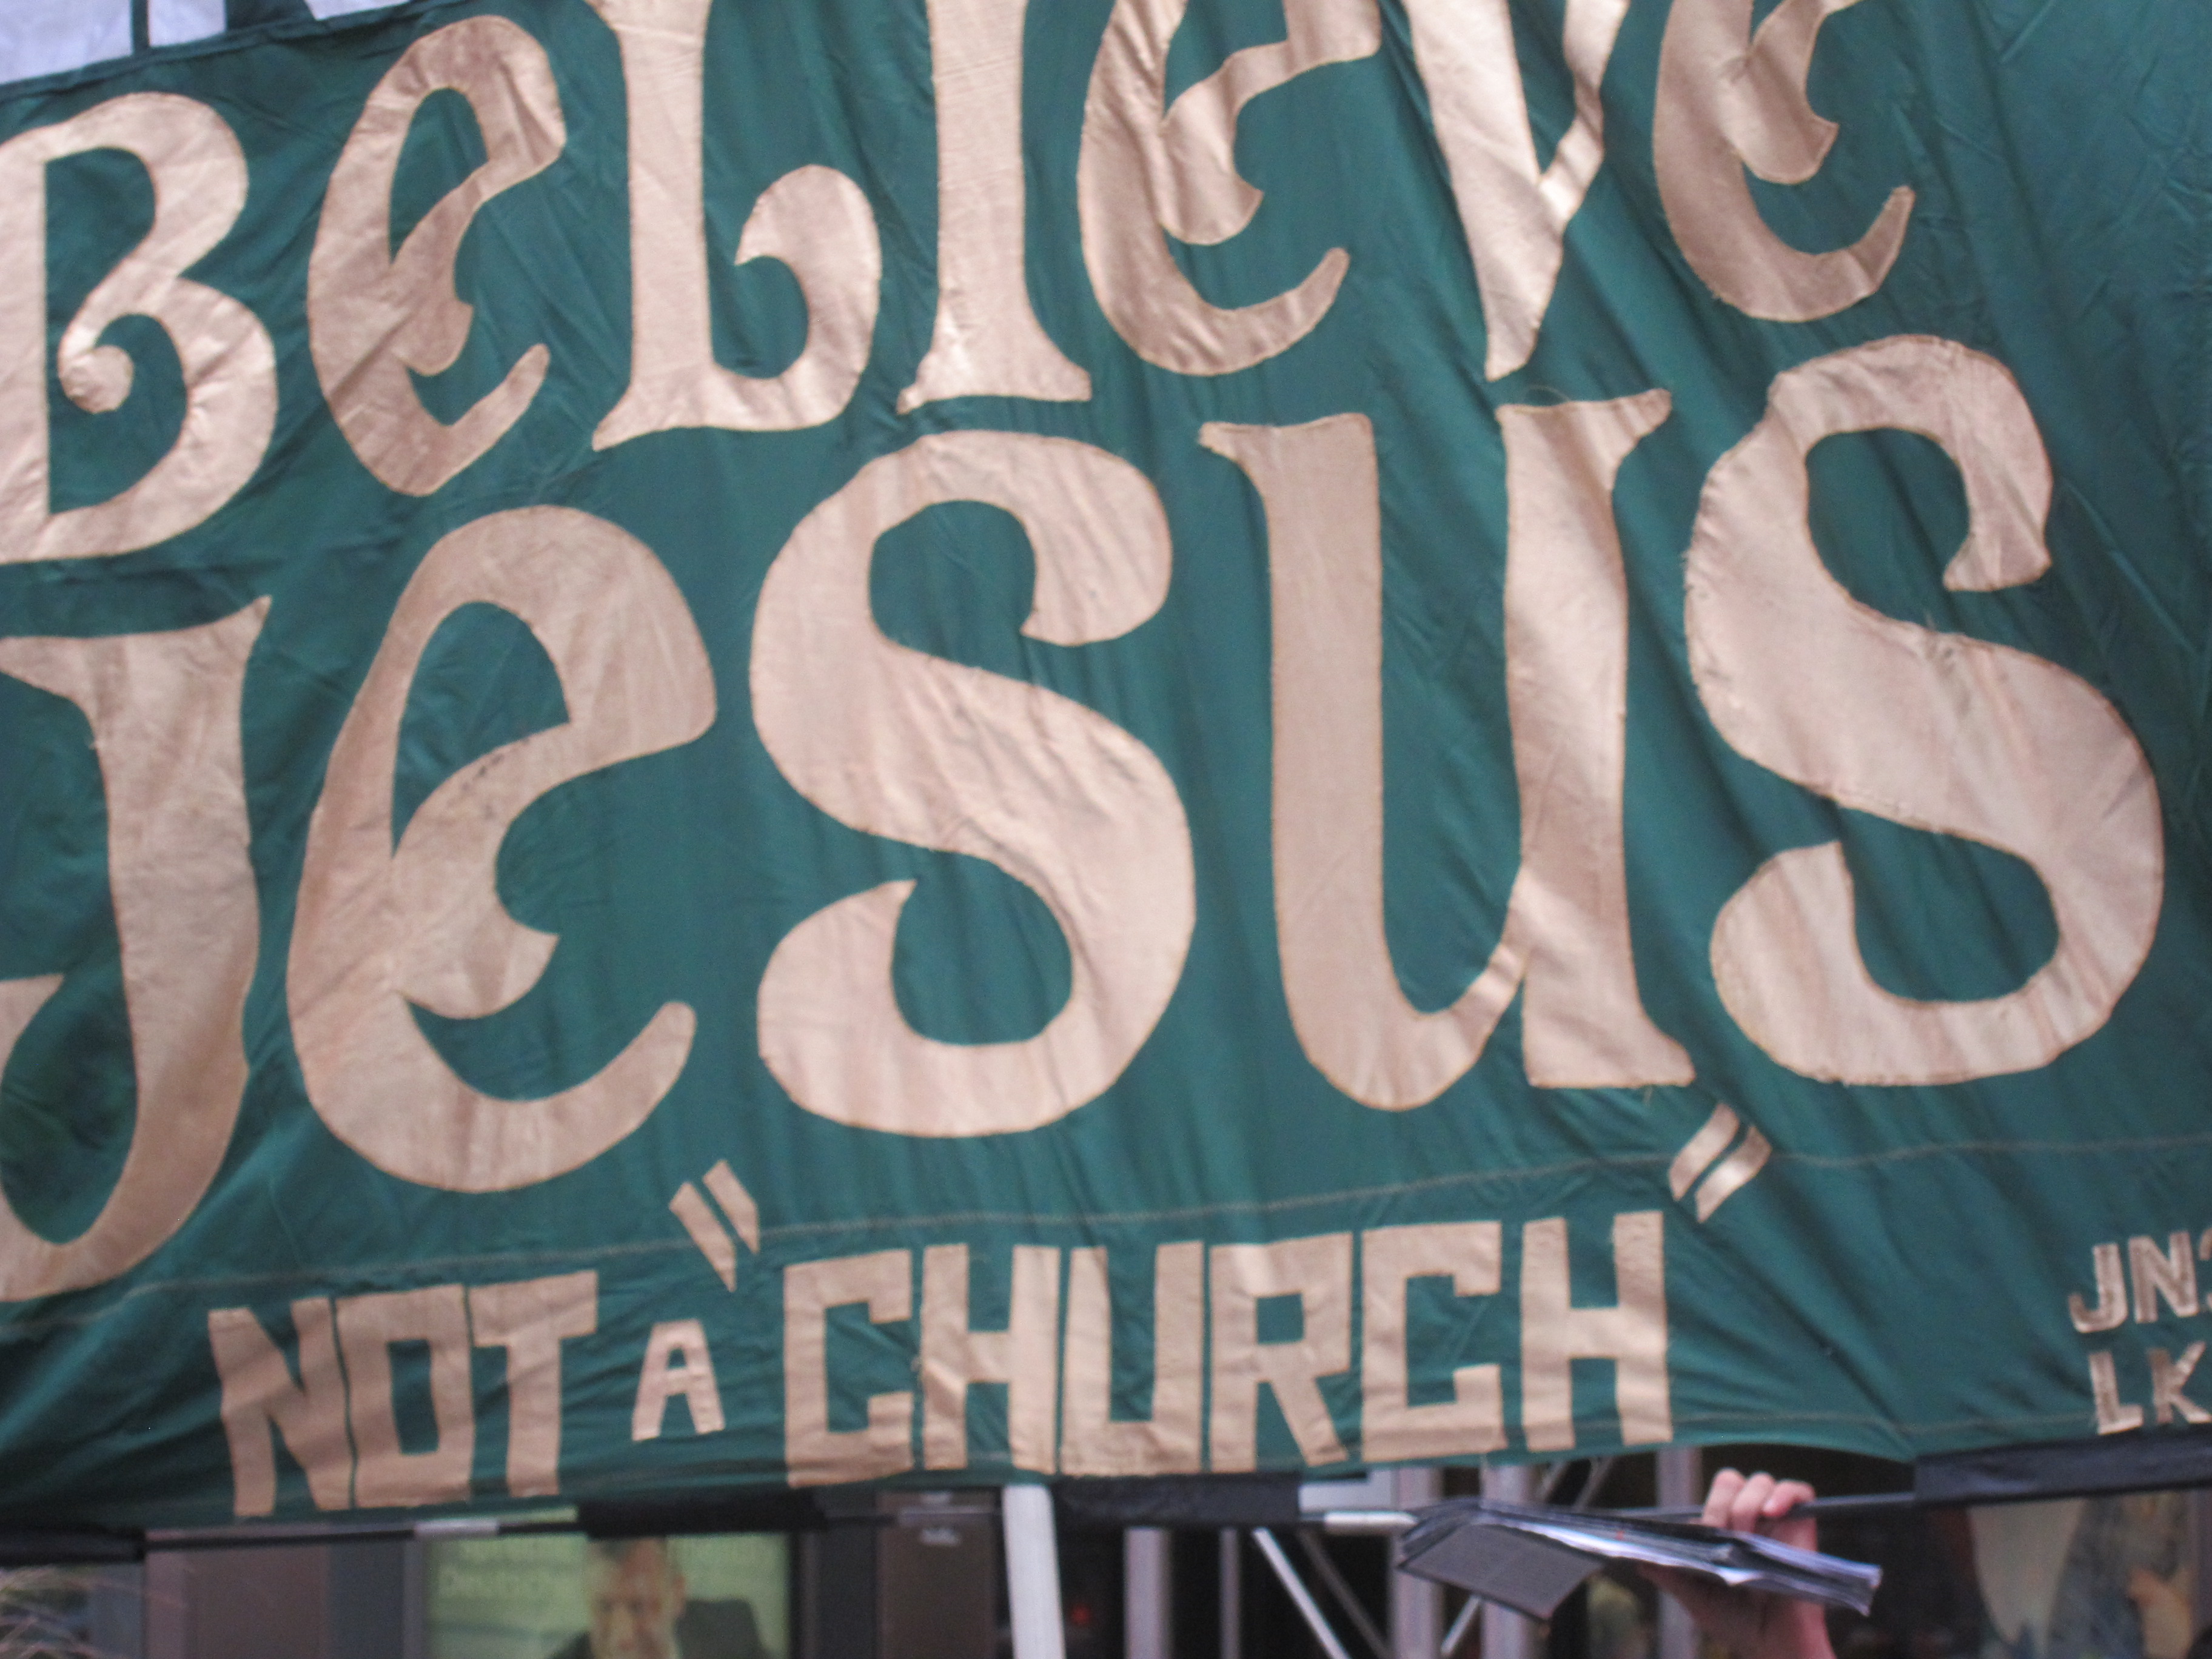 Believe Jesus, not a church